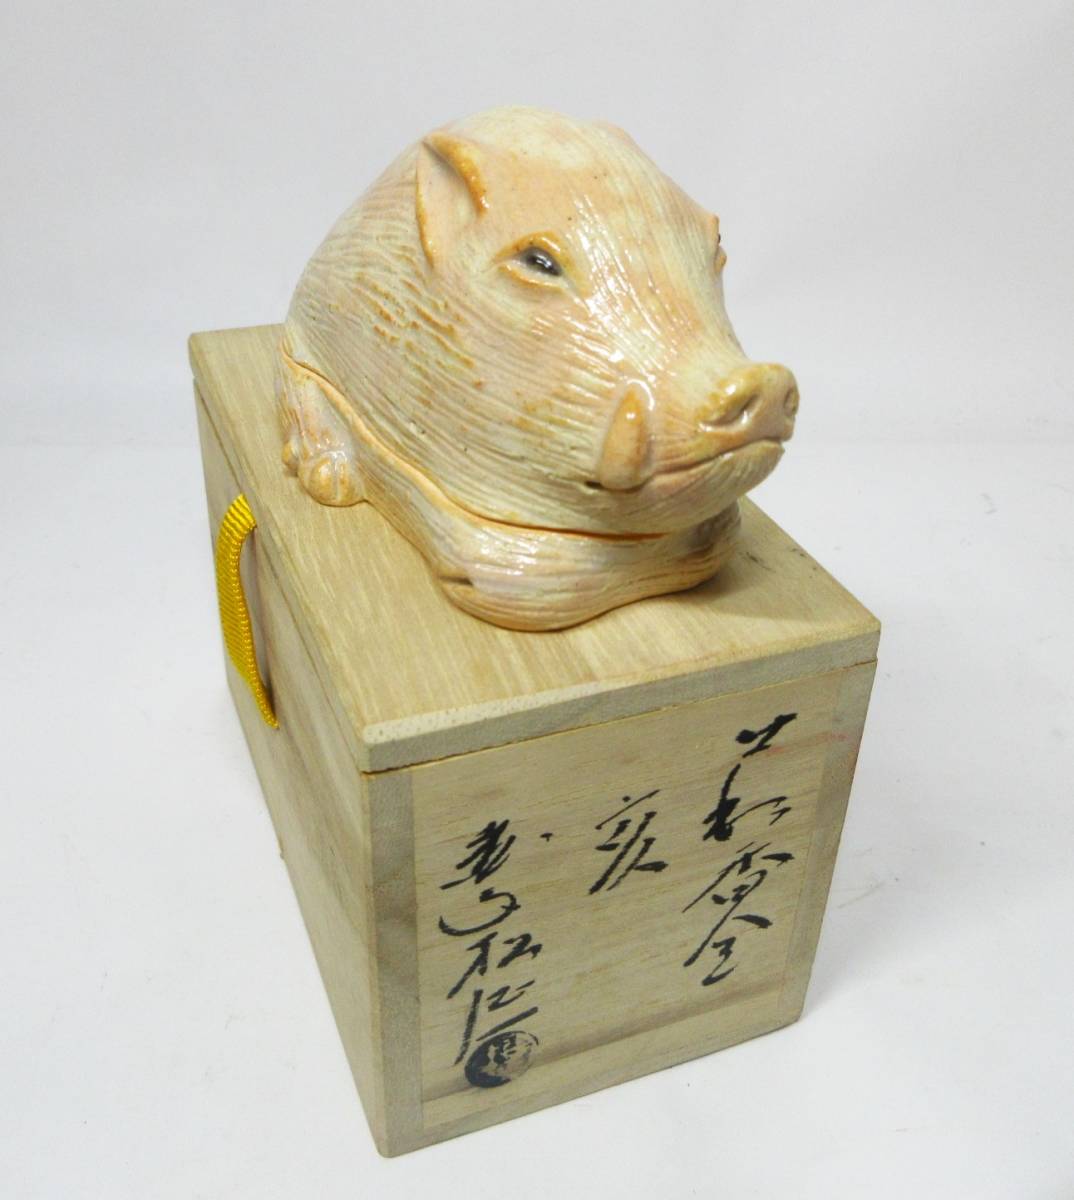 中国猪黄道带 向量例证. 插画 包括有 红色, 文化, 金子, 汉语, 模式, 剪切, 传统, 中国, 要素 - 84817882